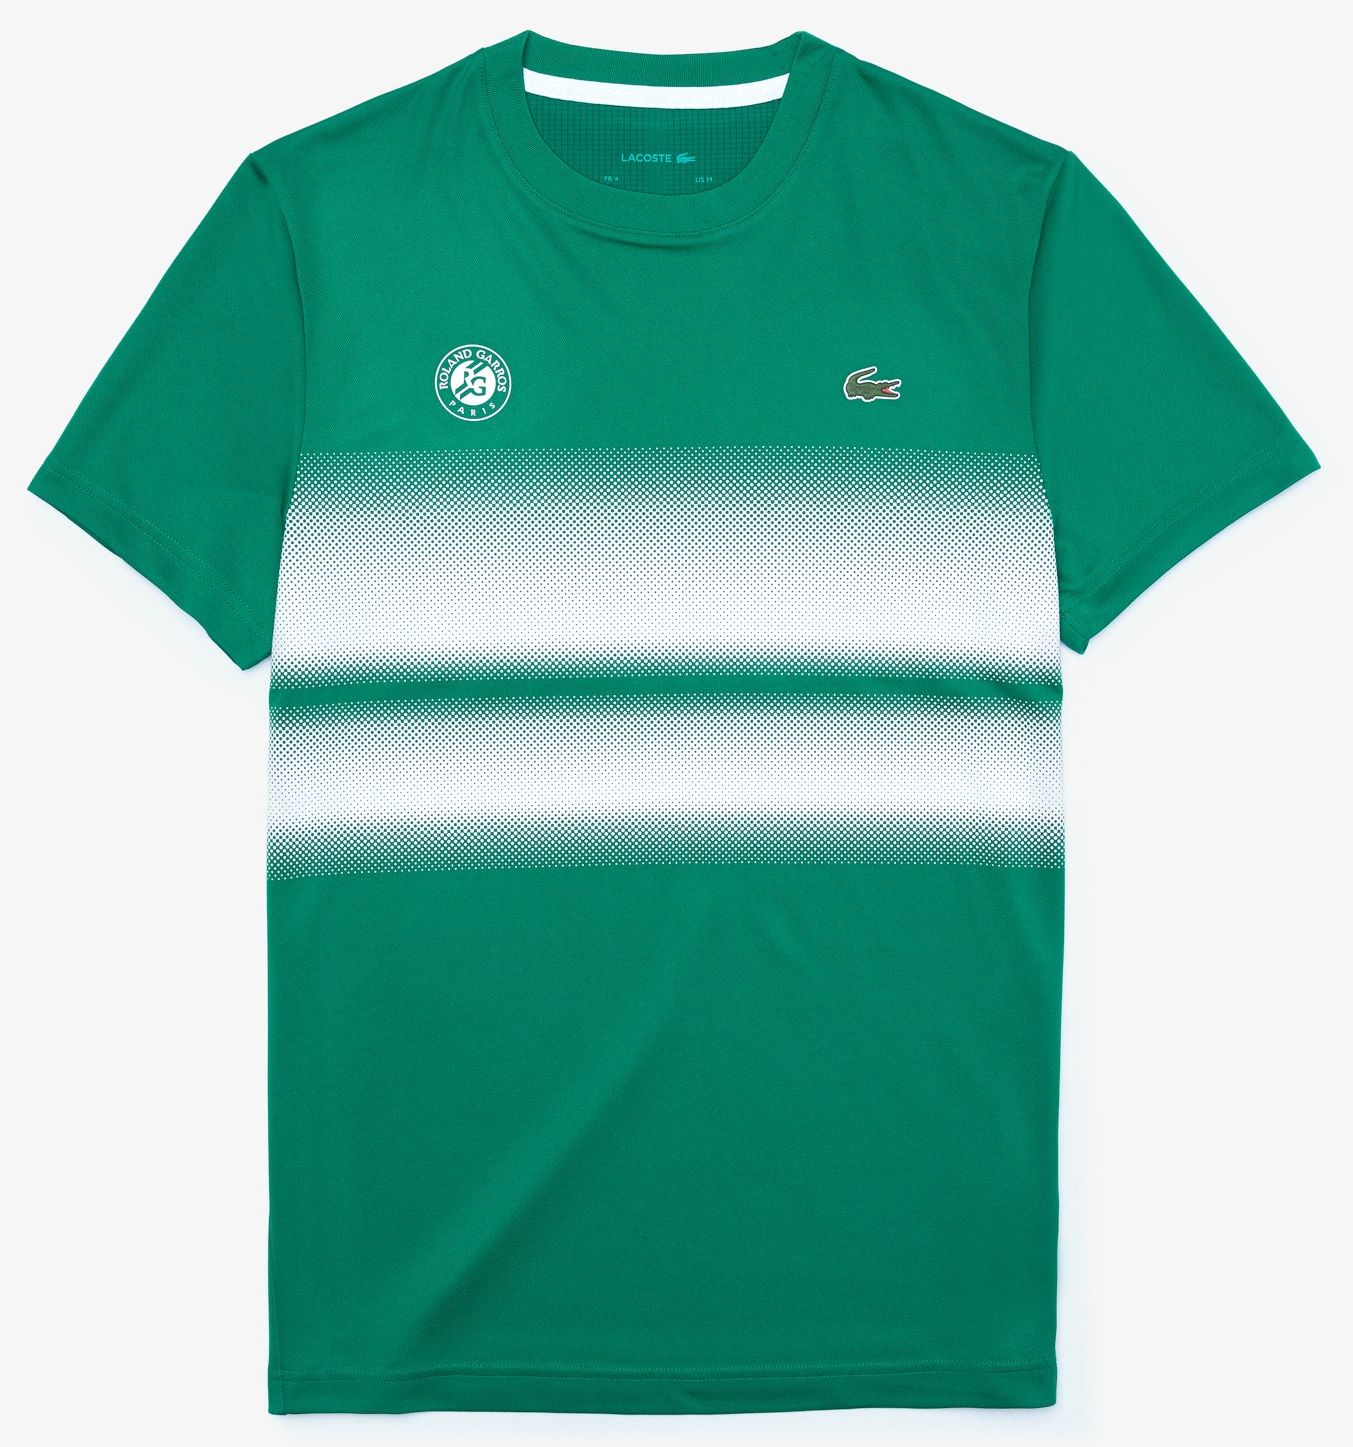 Camiseta masculina Lacoste SPORT Roland Garros Edition em jérsei robusto -  Loja de Artigos para Tênis, Beach Tennis e Padel - Tênis Bard